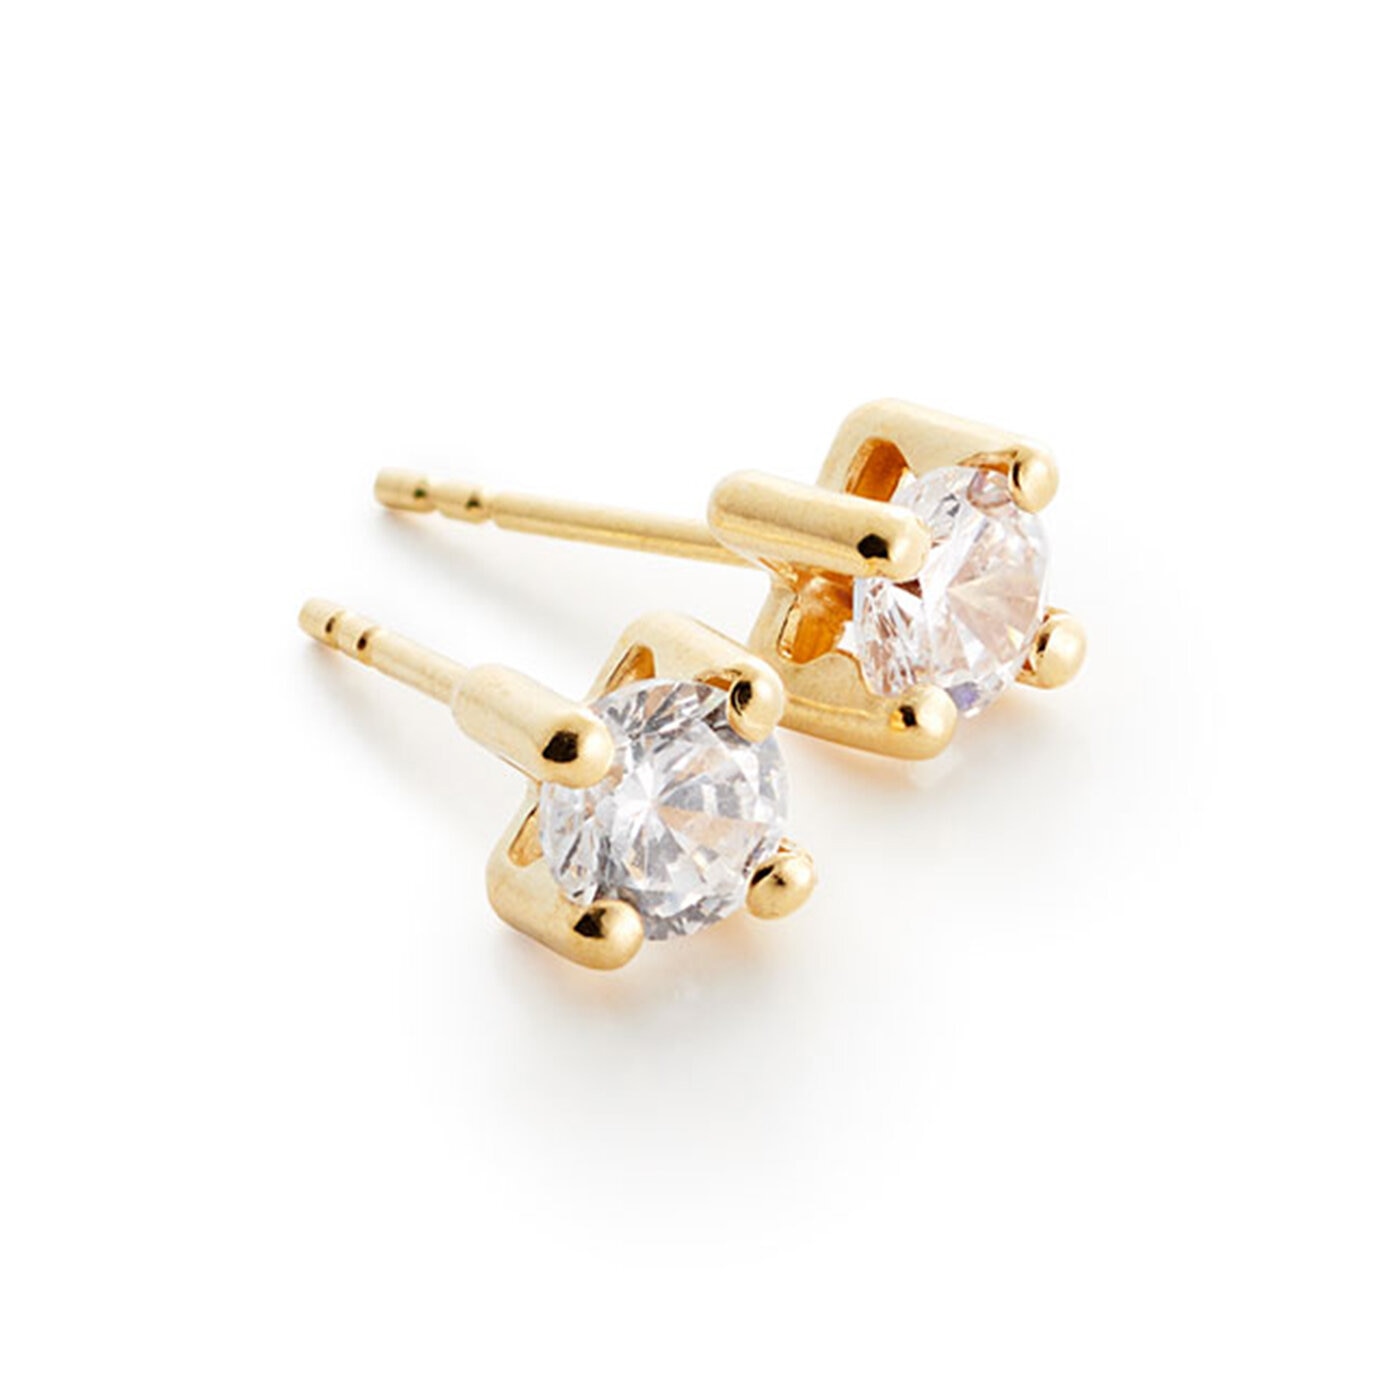 Golden glass earrings 18K 4 mm